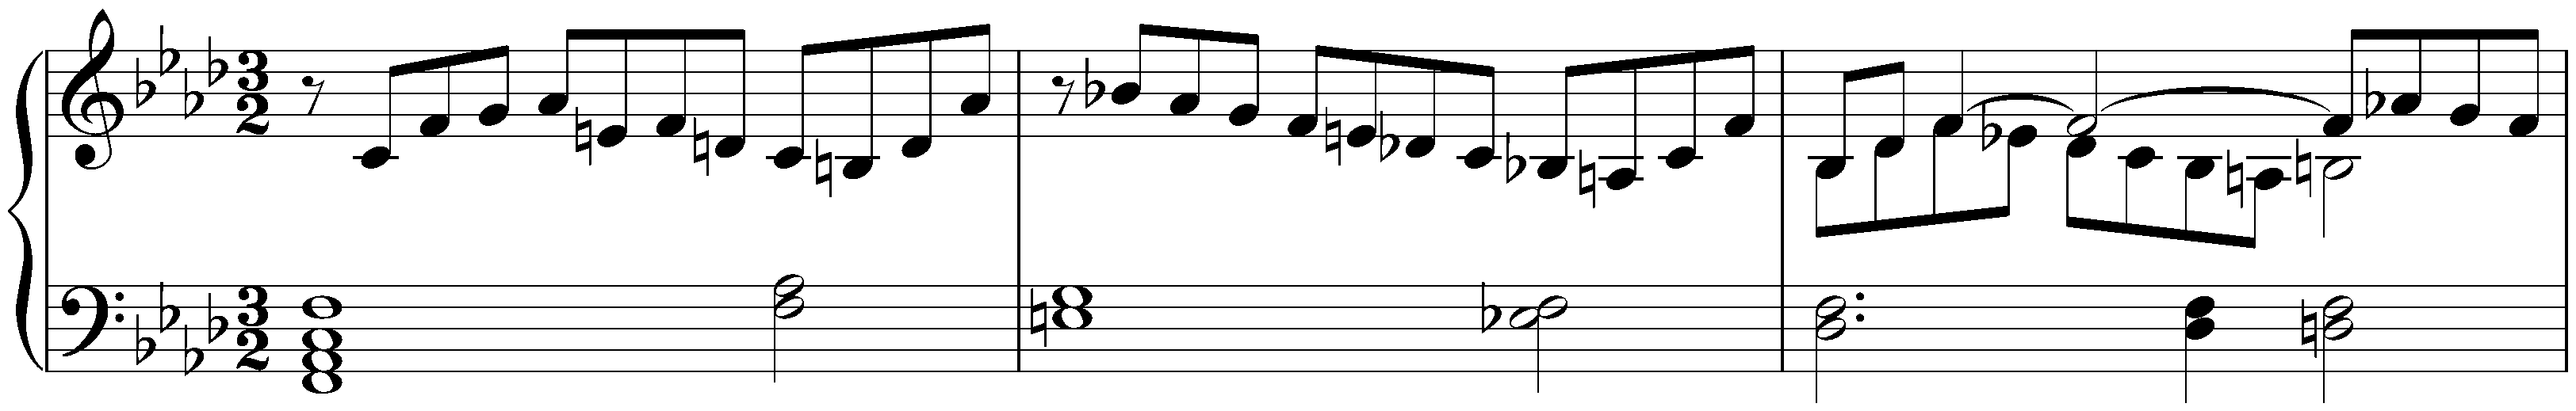 Prelude in F minor, WoO 55